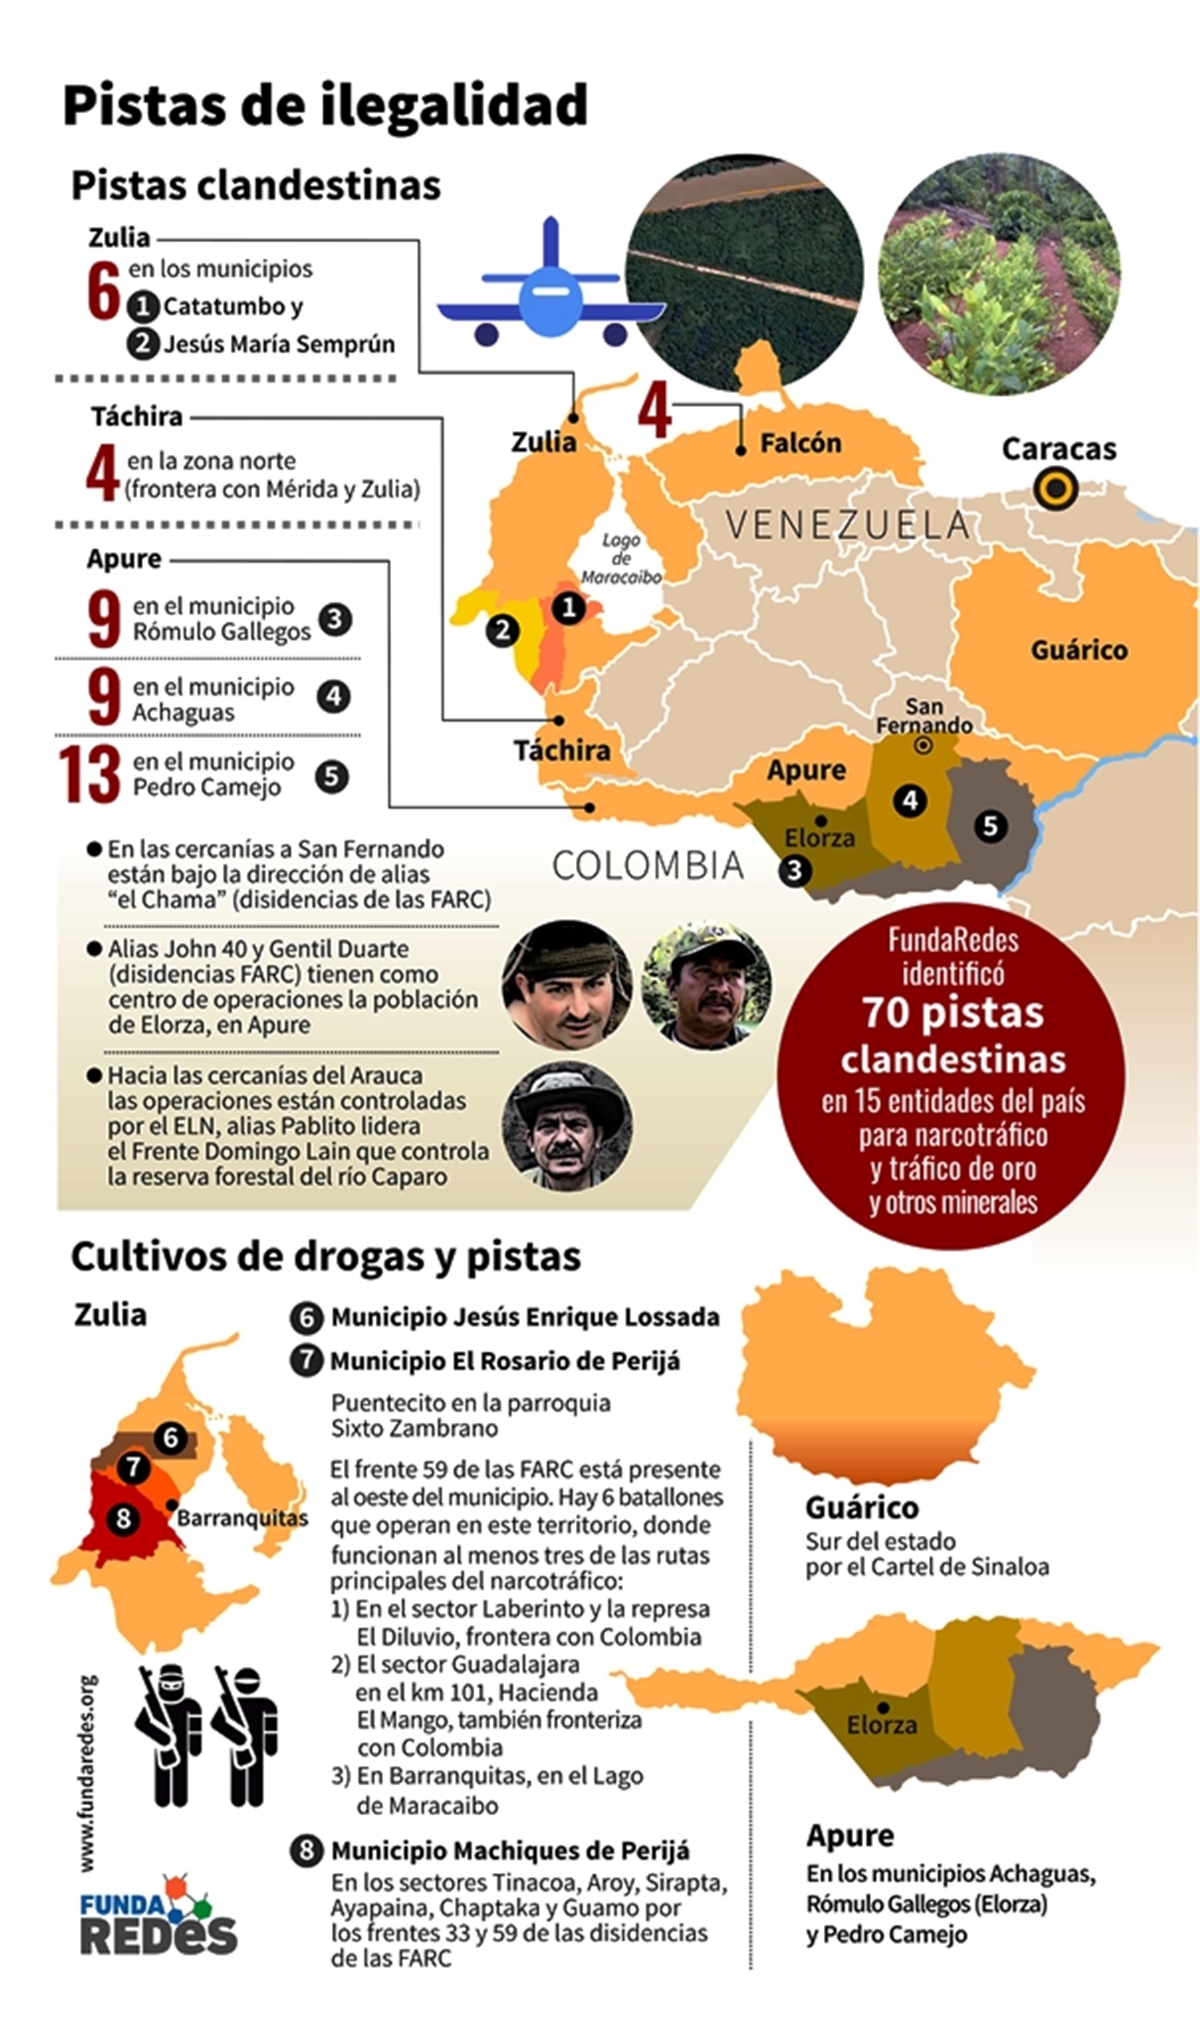 Fundaredes: Pistas clandestinas para el tráfico de drogas y oro financian operaciones de grupos irregulares en Venezuela